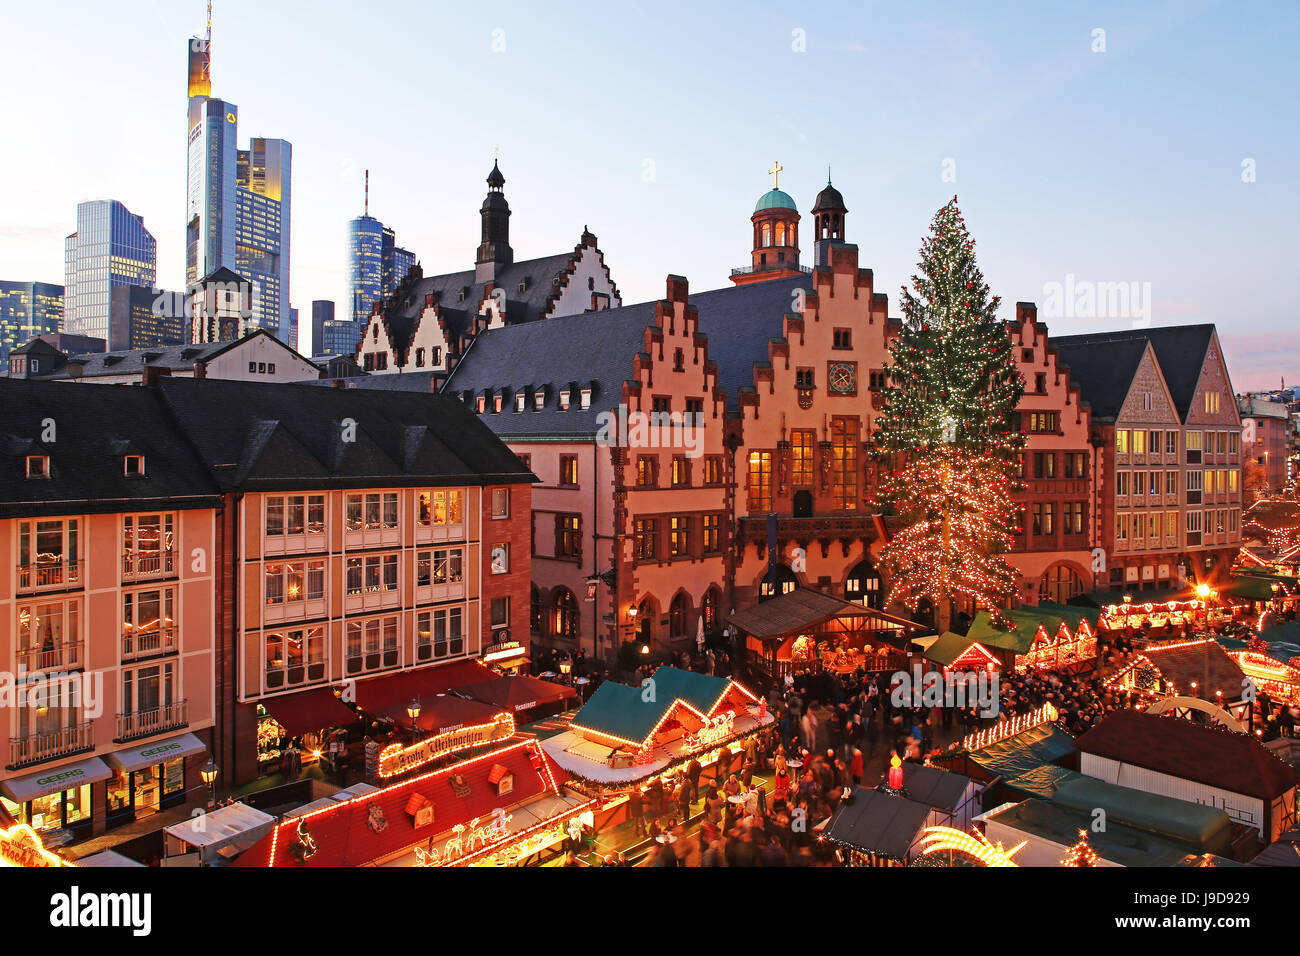 Foire de Noël sur la place Roemerberg, Frankfurt am Main, Hesse, Germany, Europe Banque D'Images